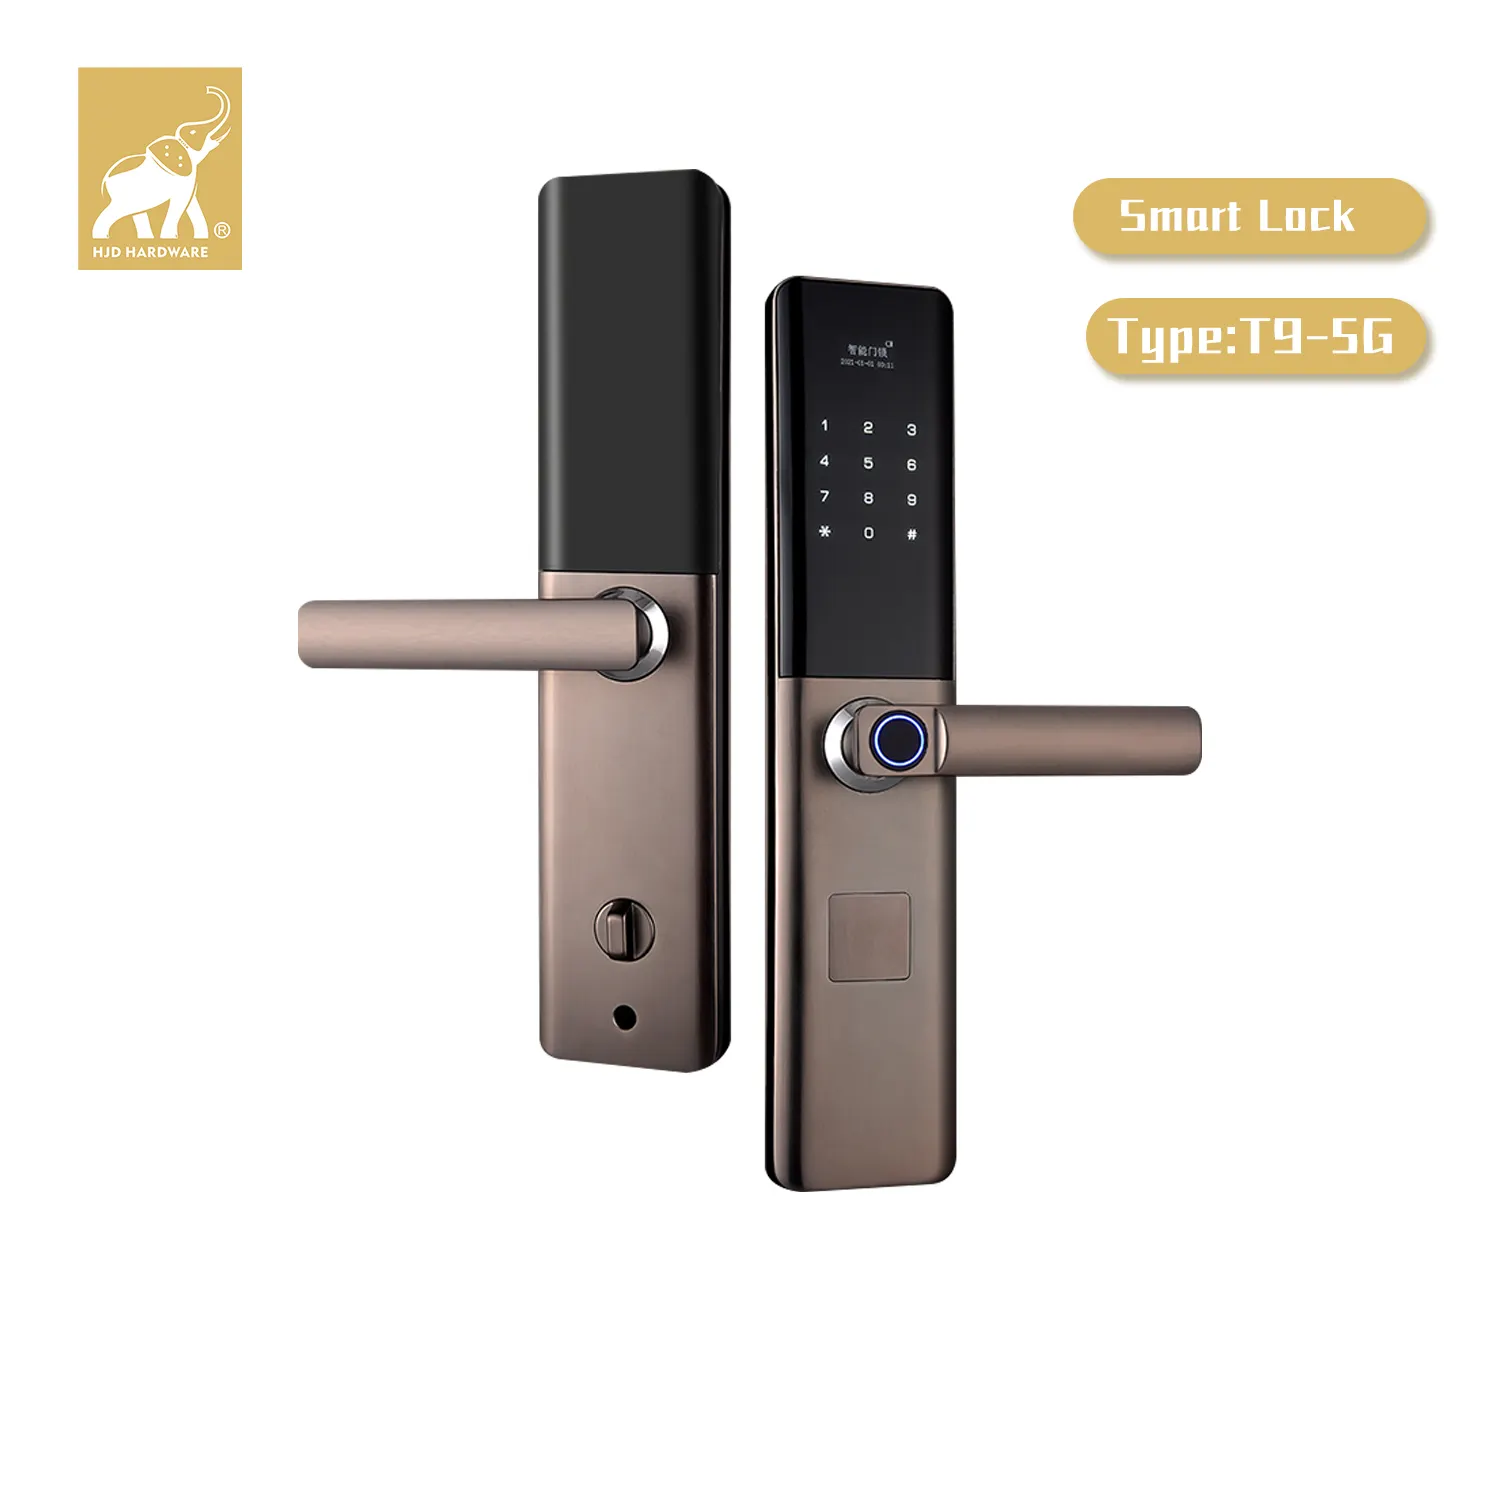 HJD-cuatro métodos de desbloqueo para el hogar, cerradura biométrica digital con contraseña y huella dactilar